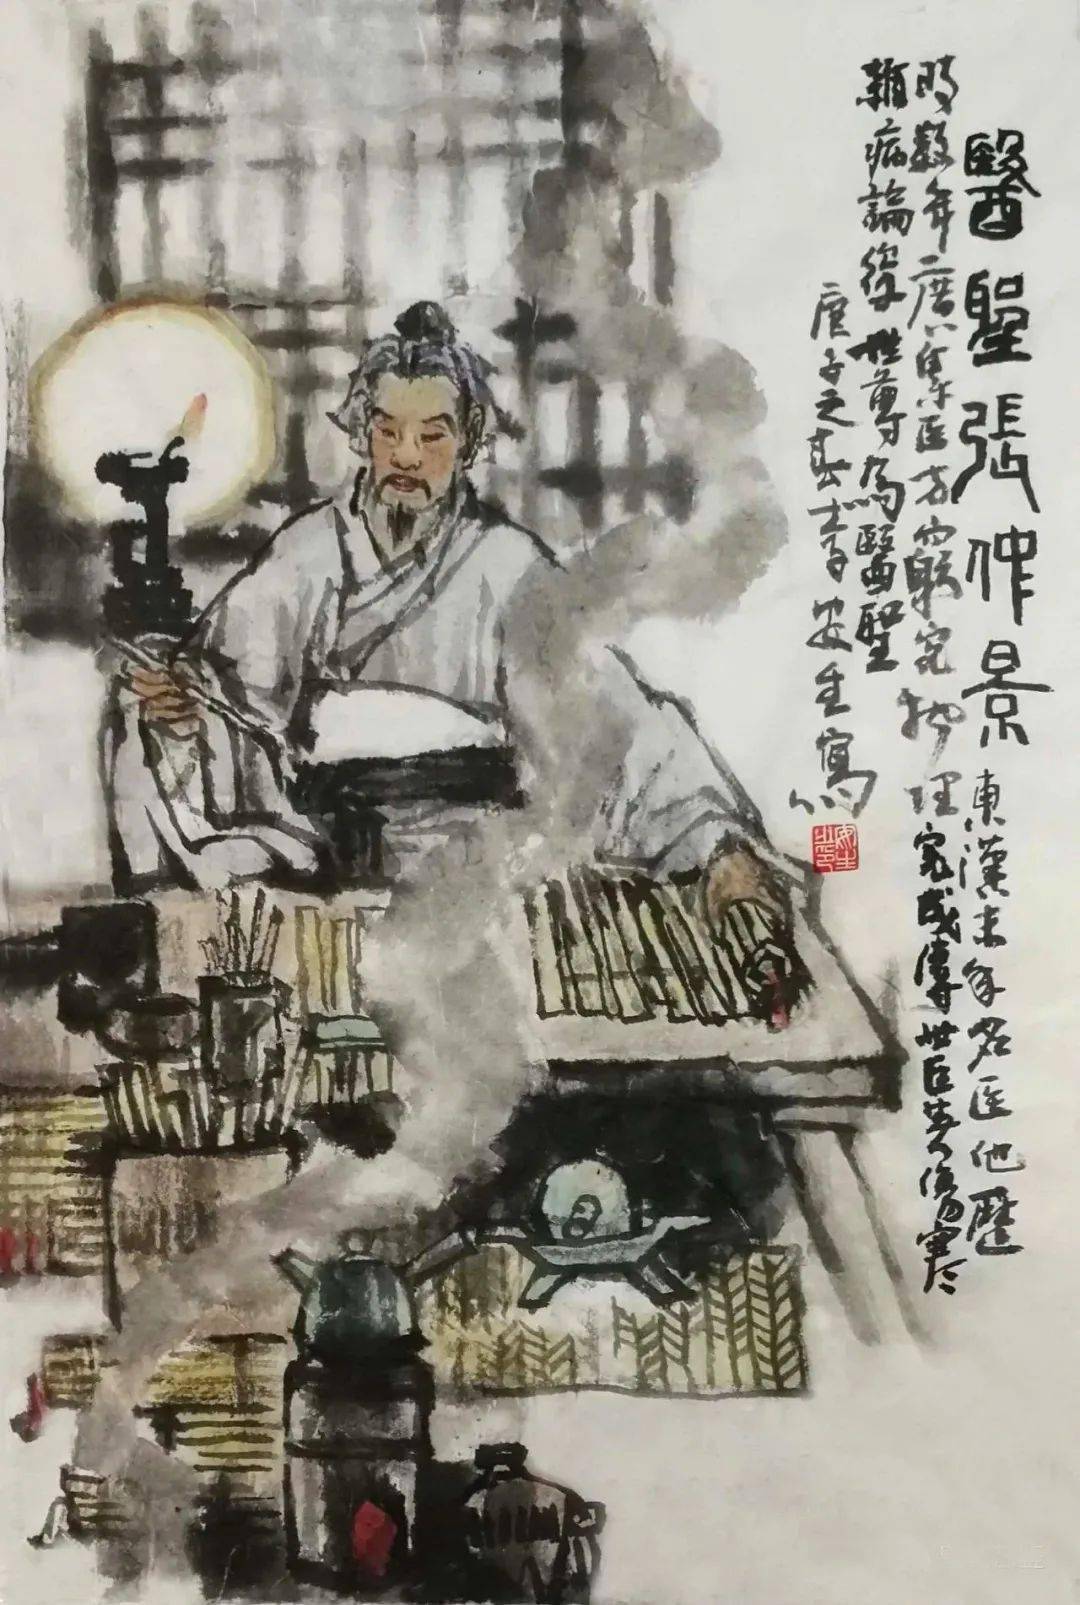 【艺动态】 人物画家李安生绘出《古代名医组图》